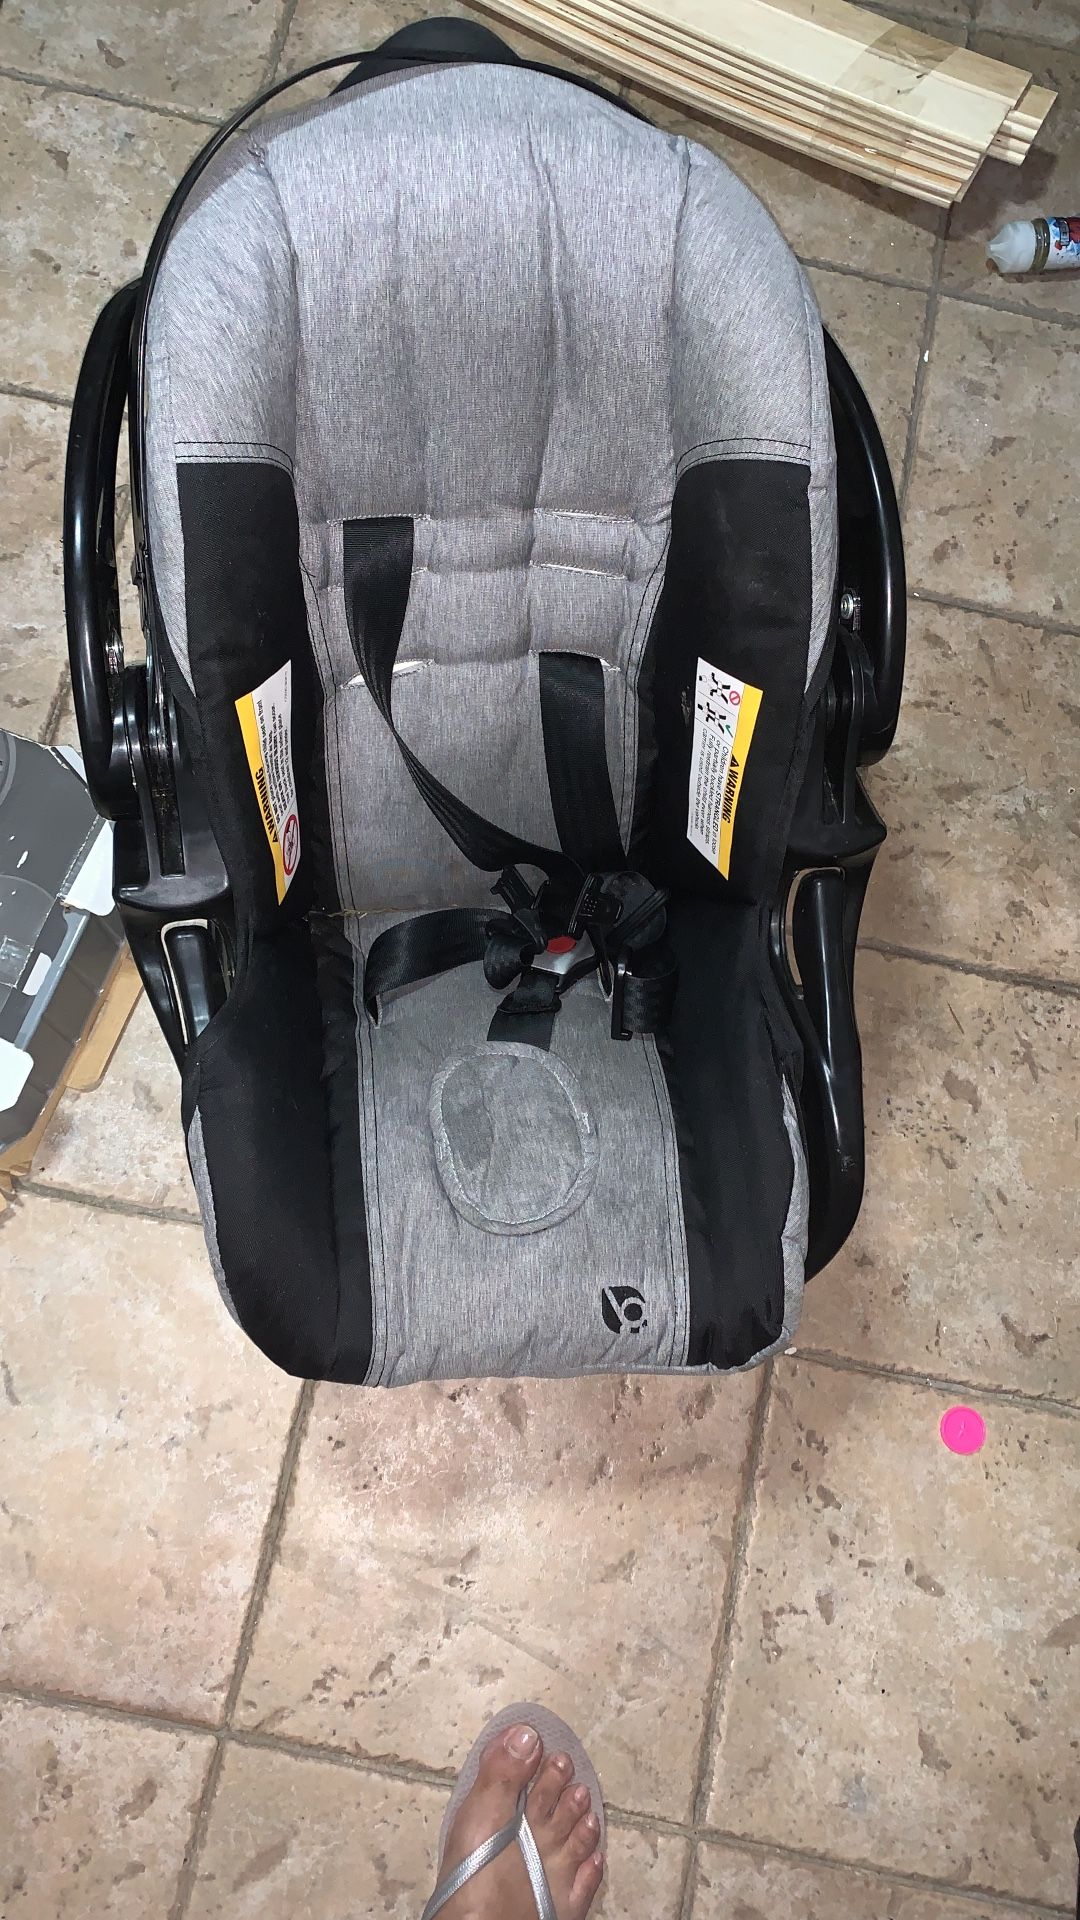 Baby car seat